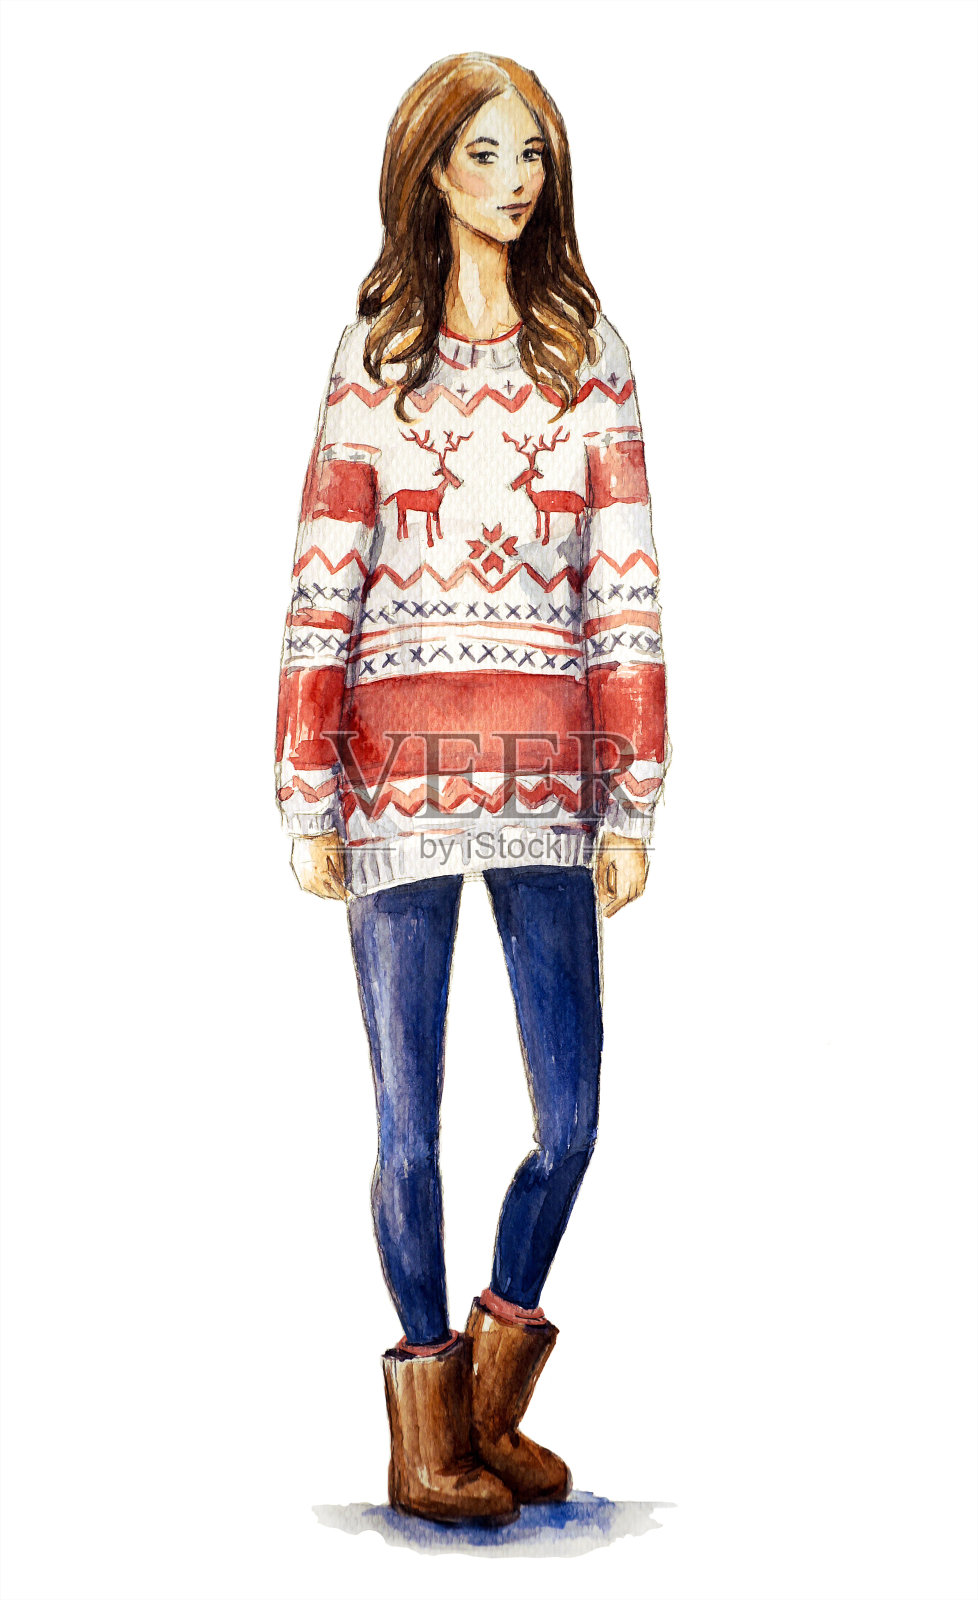 一个穿着圣诞毛衣的女孩的水彩插画。圣诞装扮，时尚插画。插画图片素材